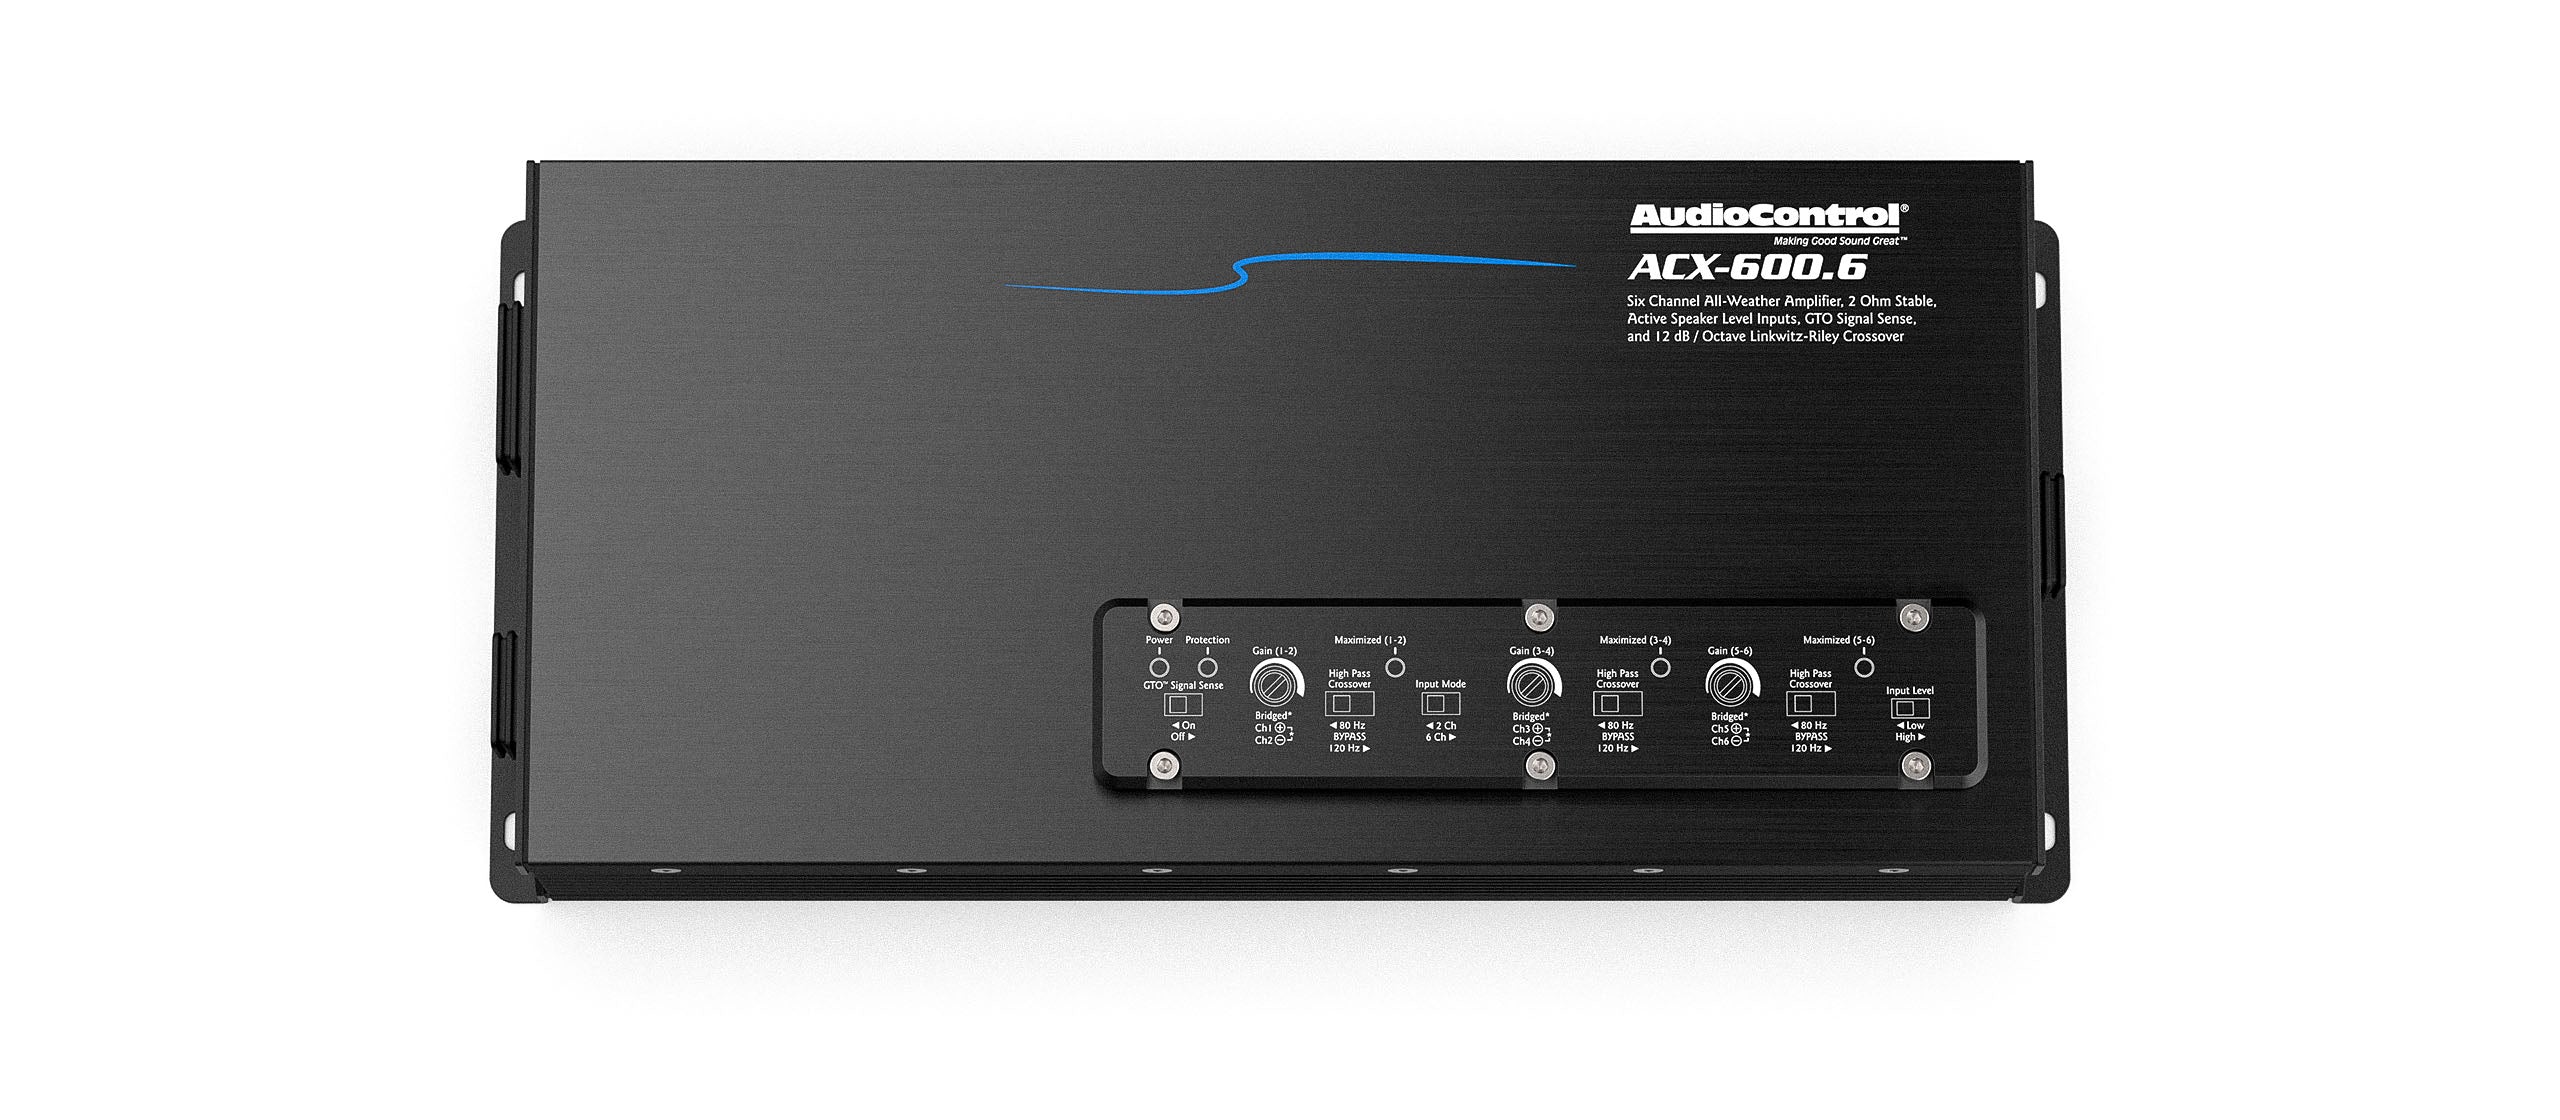 AudioControl ACX-600.6 6-Channel 600 Watt Monoblock All Weather Amplifier